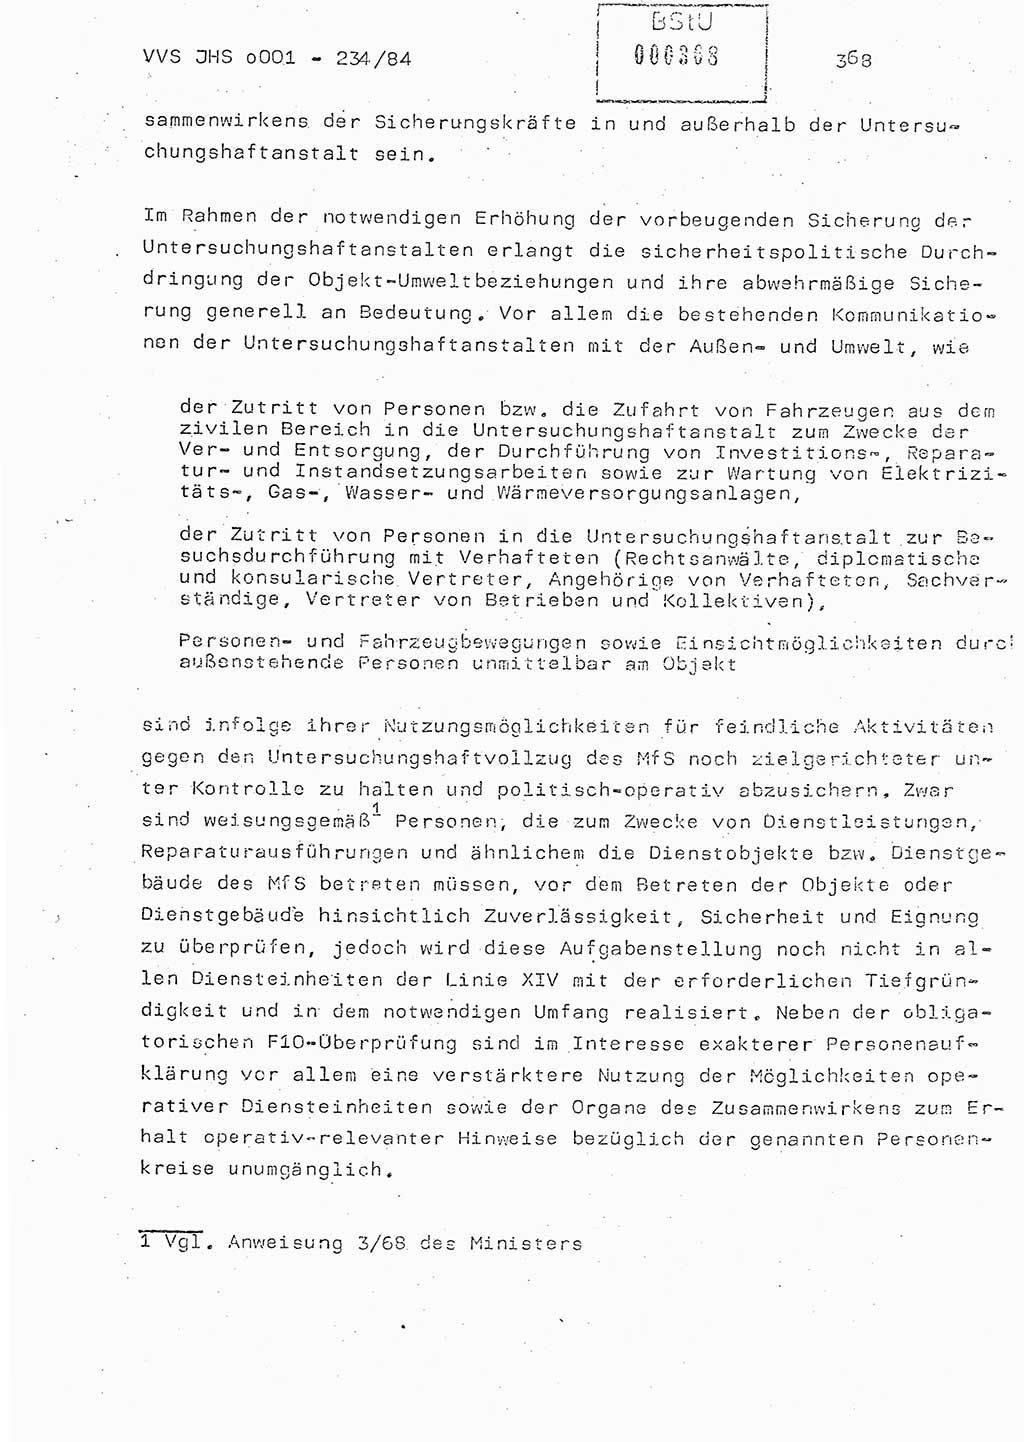 Dissertation Oberst Siegfried Rataizick (Abt. ⅩⅣ), Oberstleutnant Volkmar Heinz (Abt. ⅩⅣ), Oberstleutnant Werner Stein (HA Ⅸ), Hauptmann Heinz Conrad (JHS), Ministerium für Staatssicherheit (MfS) [Deutsche Demokratische Republik (DDR)], Juristische Hochschule (JHS), Vertrauliche Verschlußsache (VVS) o001-234/84, Potsdam 1984, Seite 368 (Diss. MfS DDR JHS VVS o001-234/84 1984, S. 368)